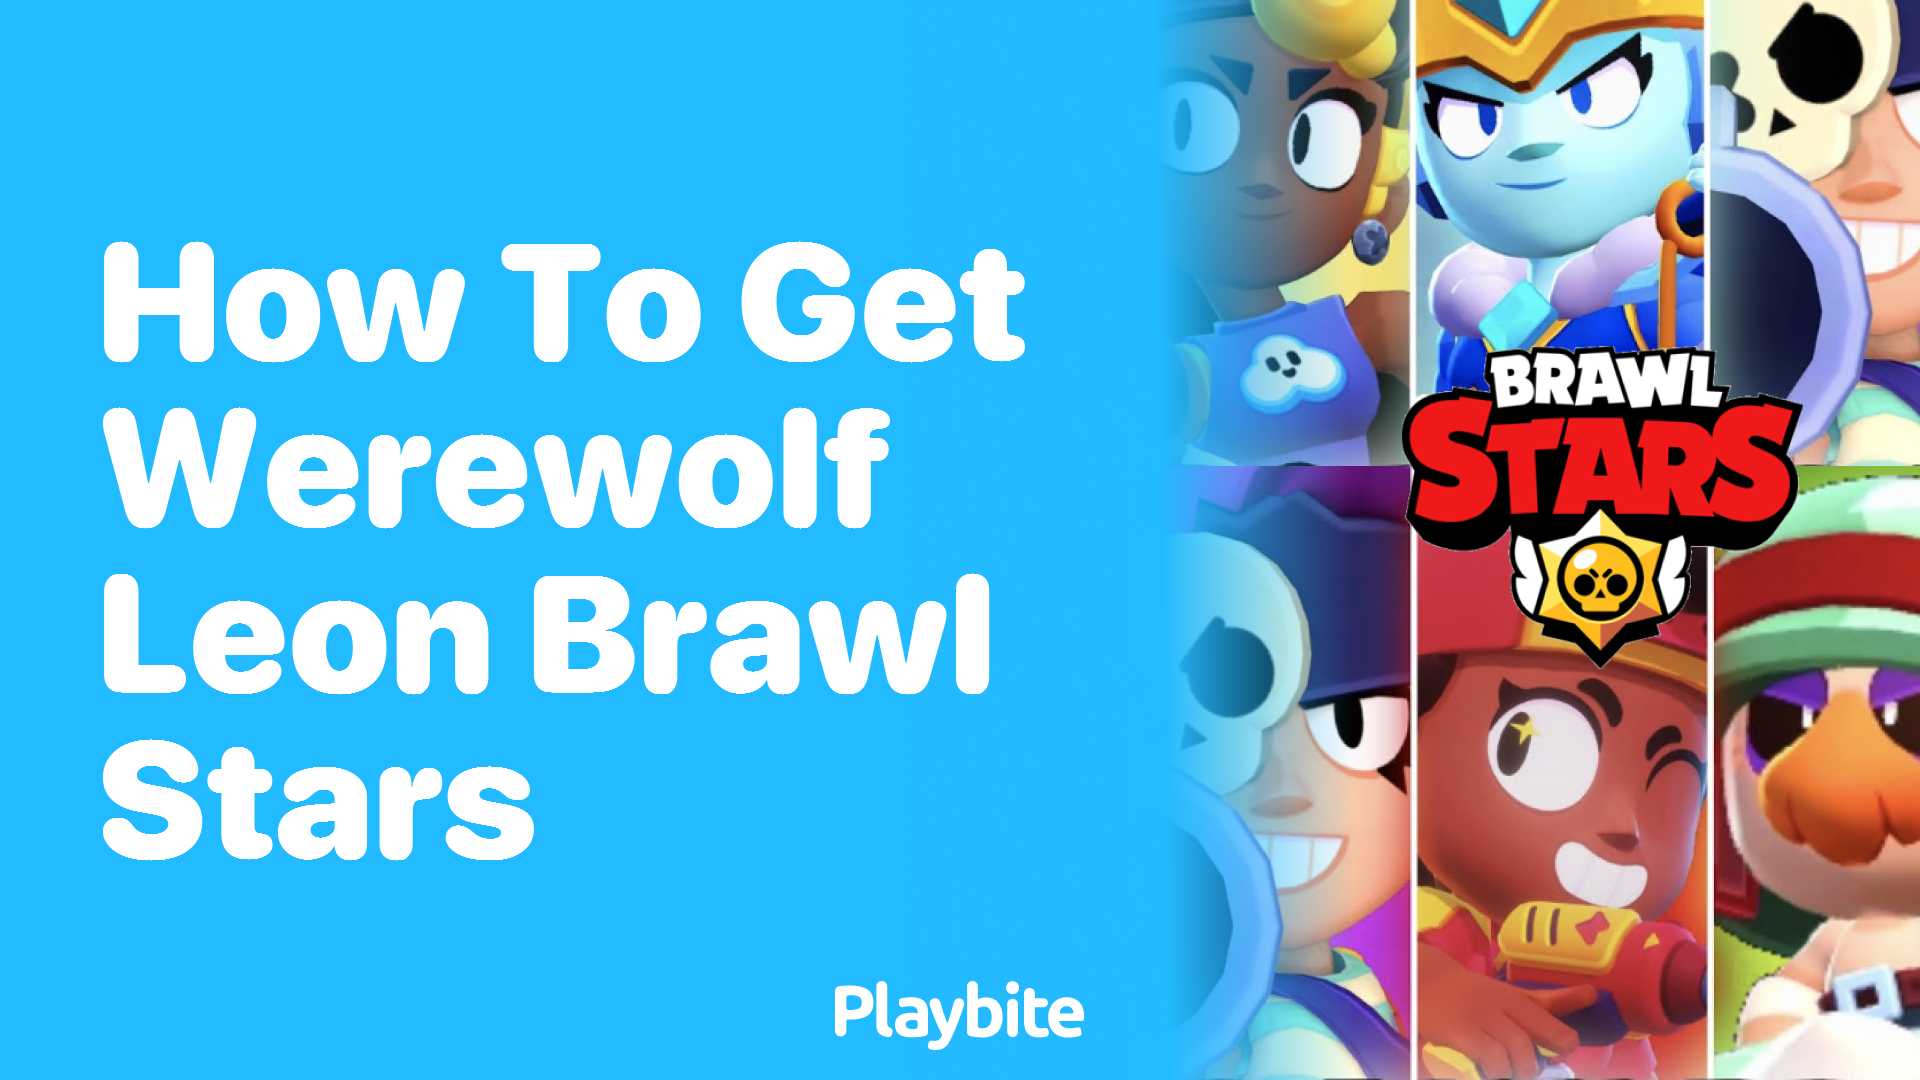 How to Get Werewolf Leon in Brawl Stars